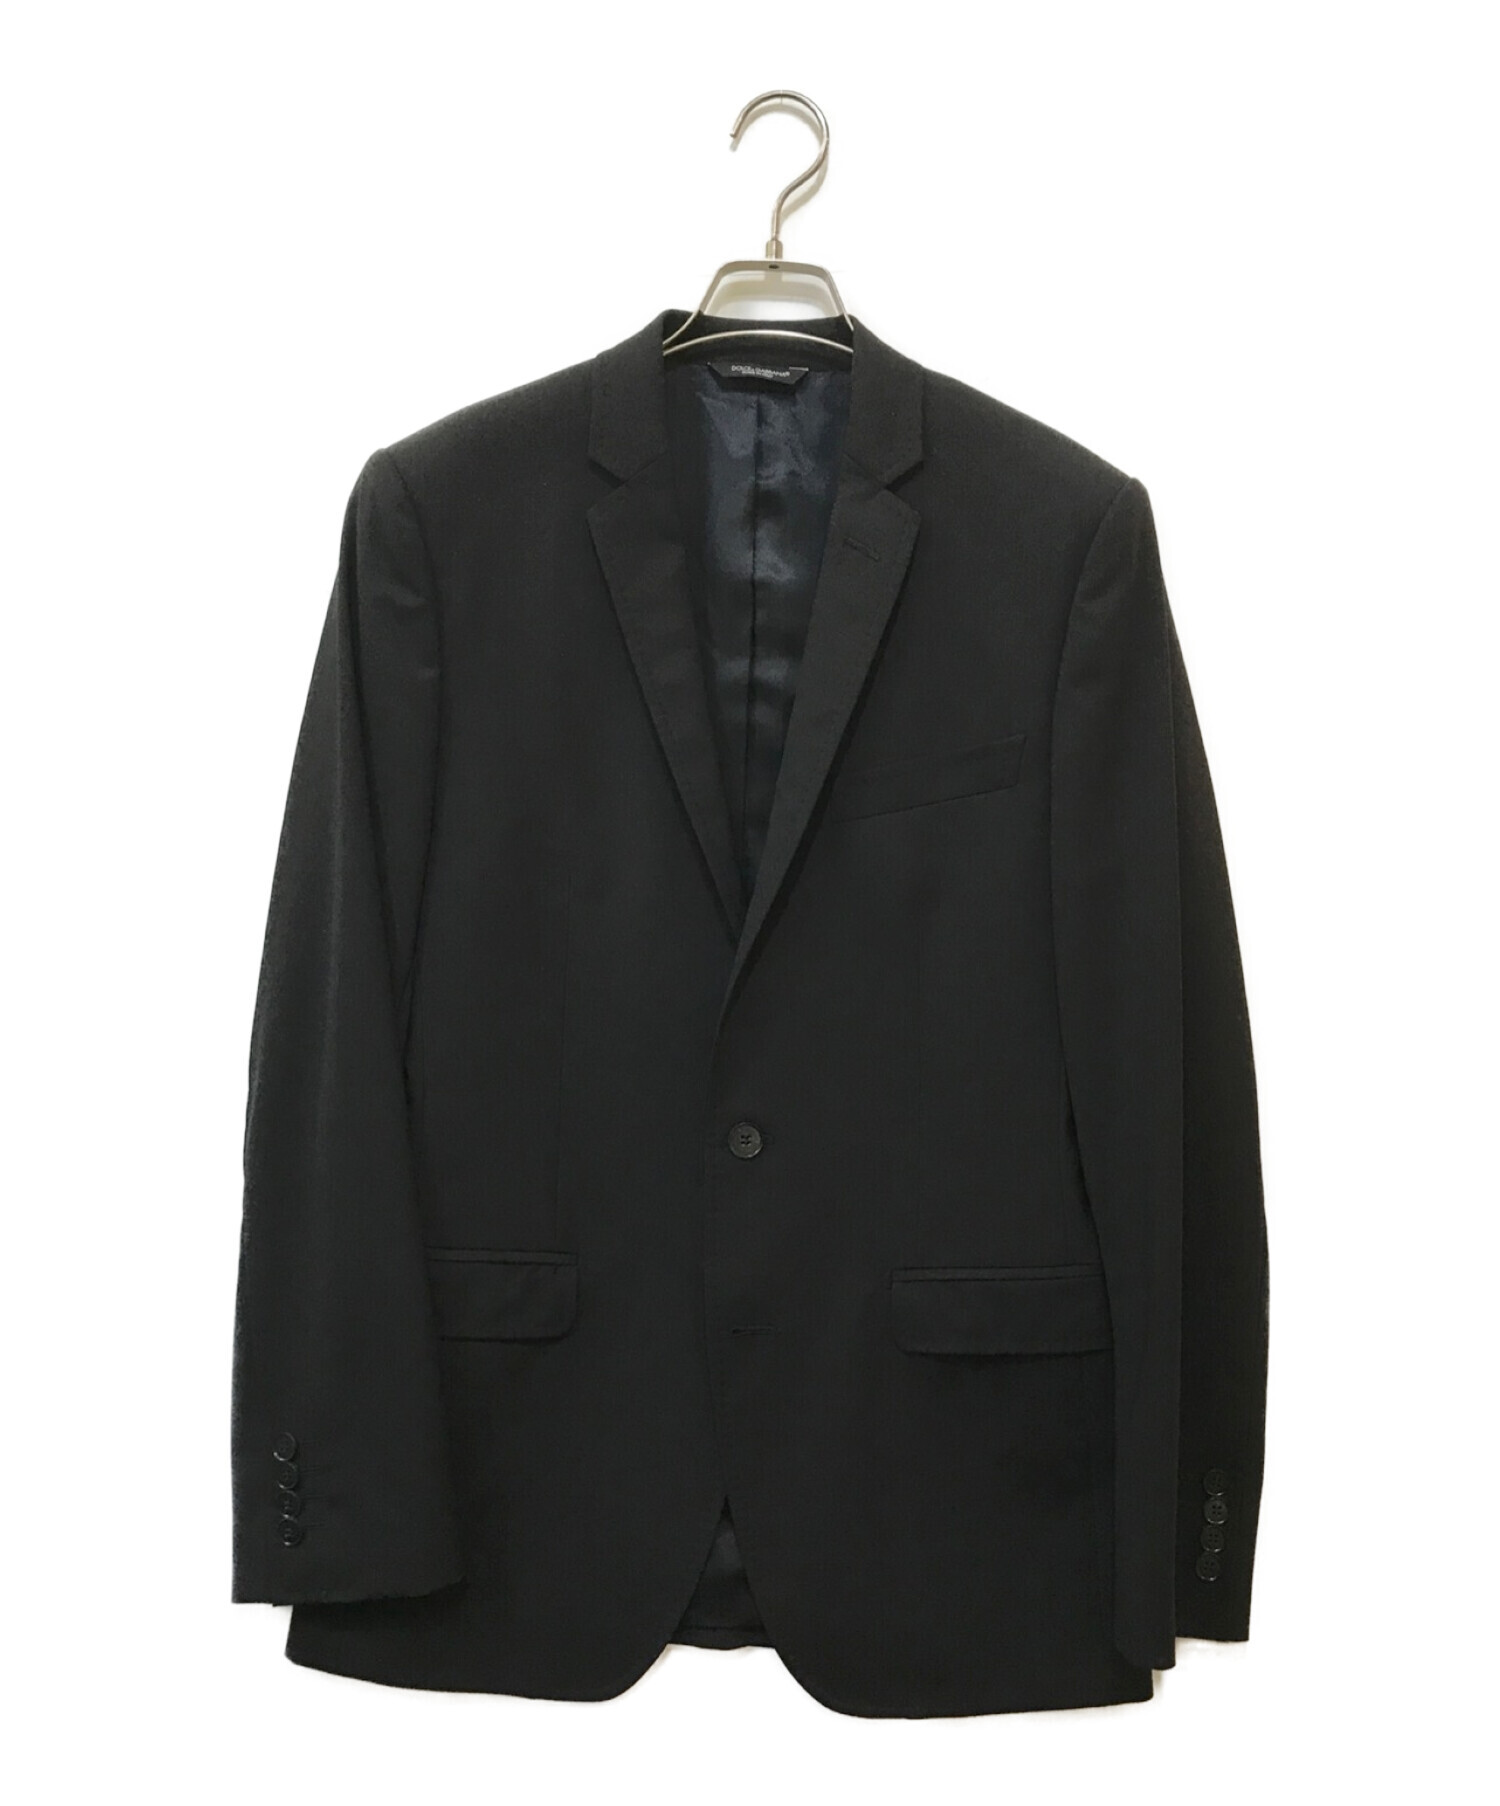 ドルチェ&ガッバーナ 2B セットアップ スーツ ブラック 44 - スーツ